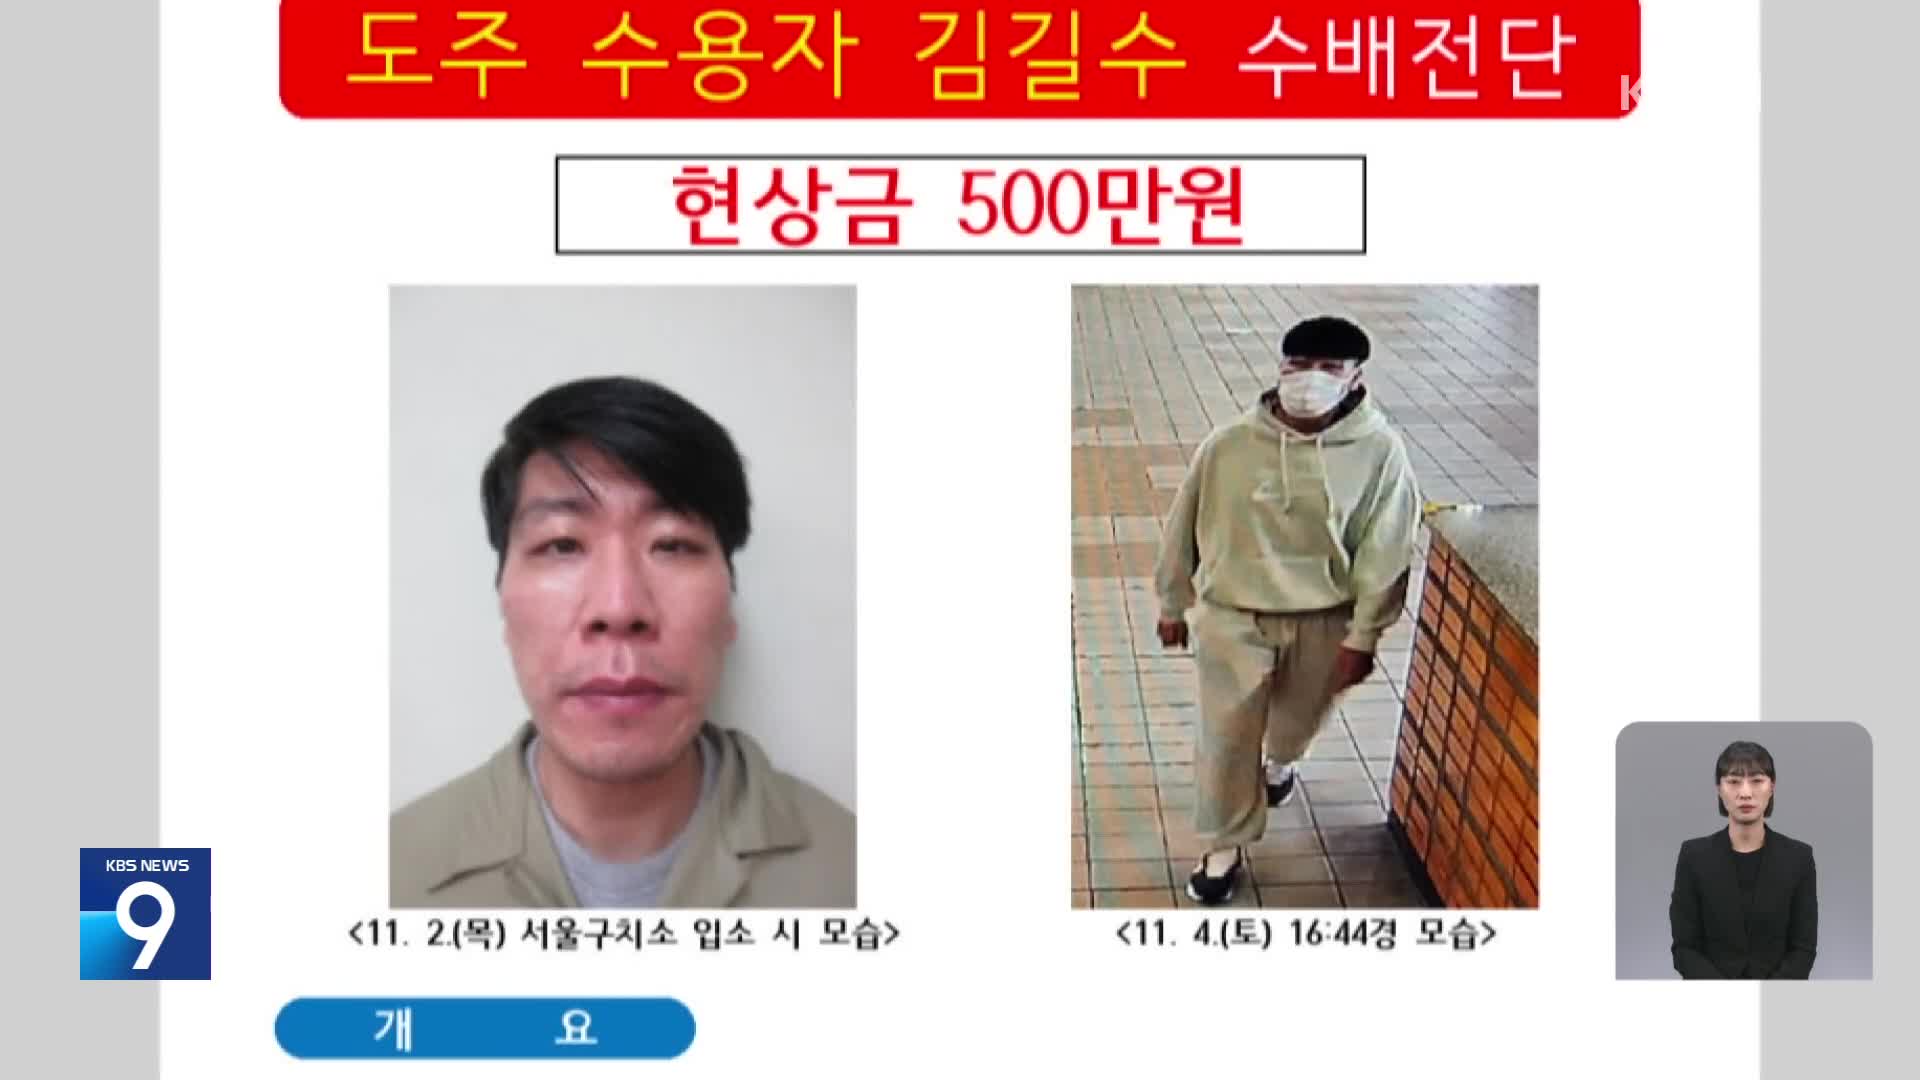 [단독] 도주한 ‘특수 강도’ 피의자 김길수, 성폭력 전과도…“2012년 징역 6년형”